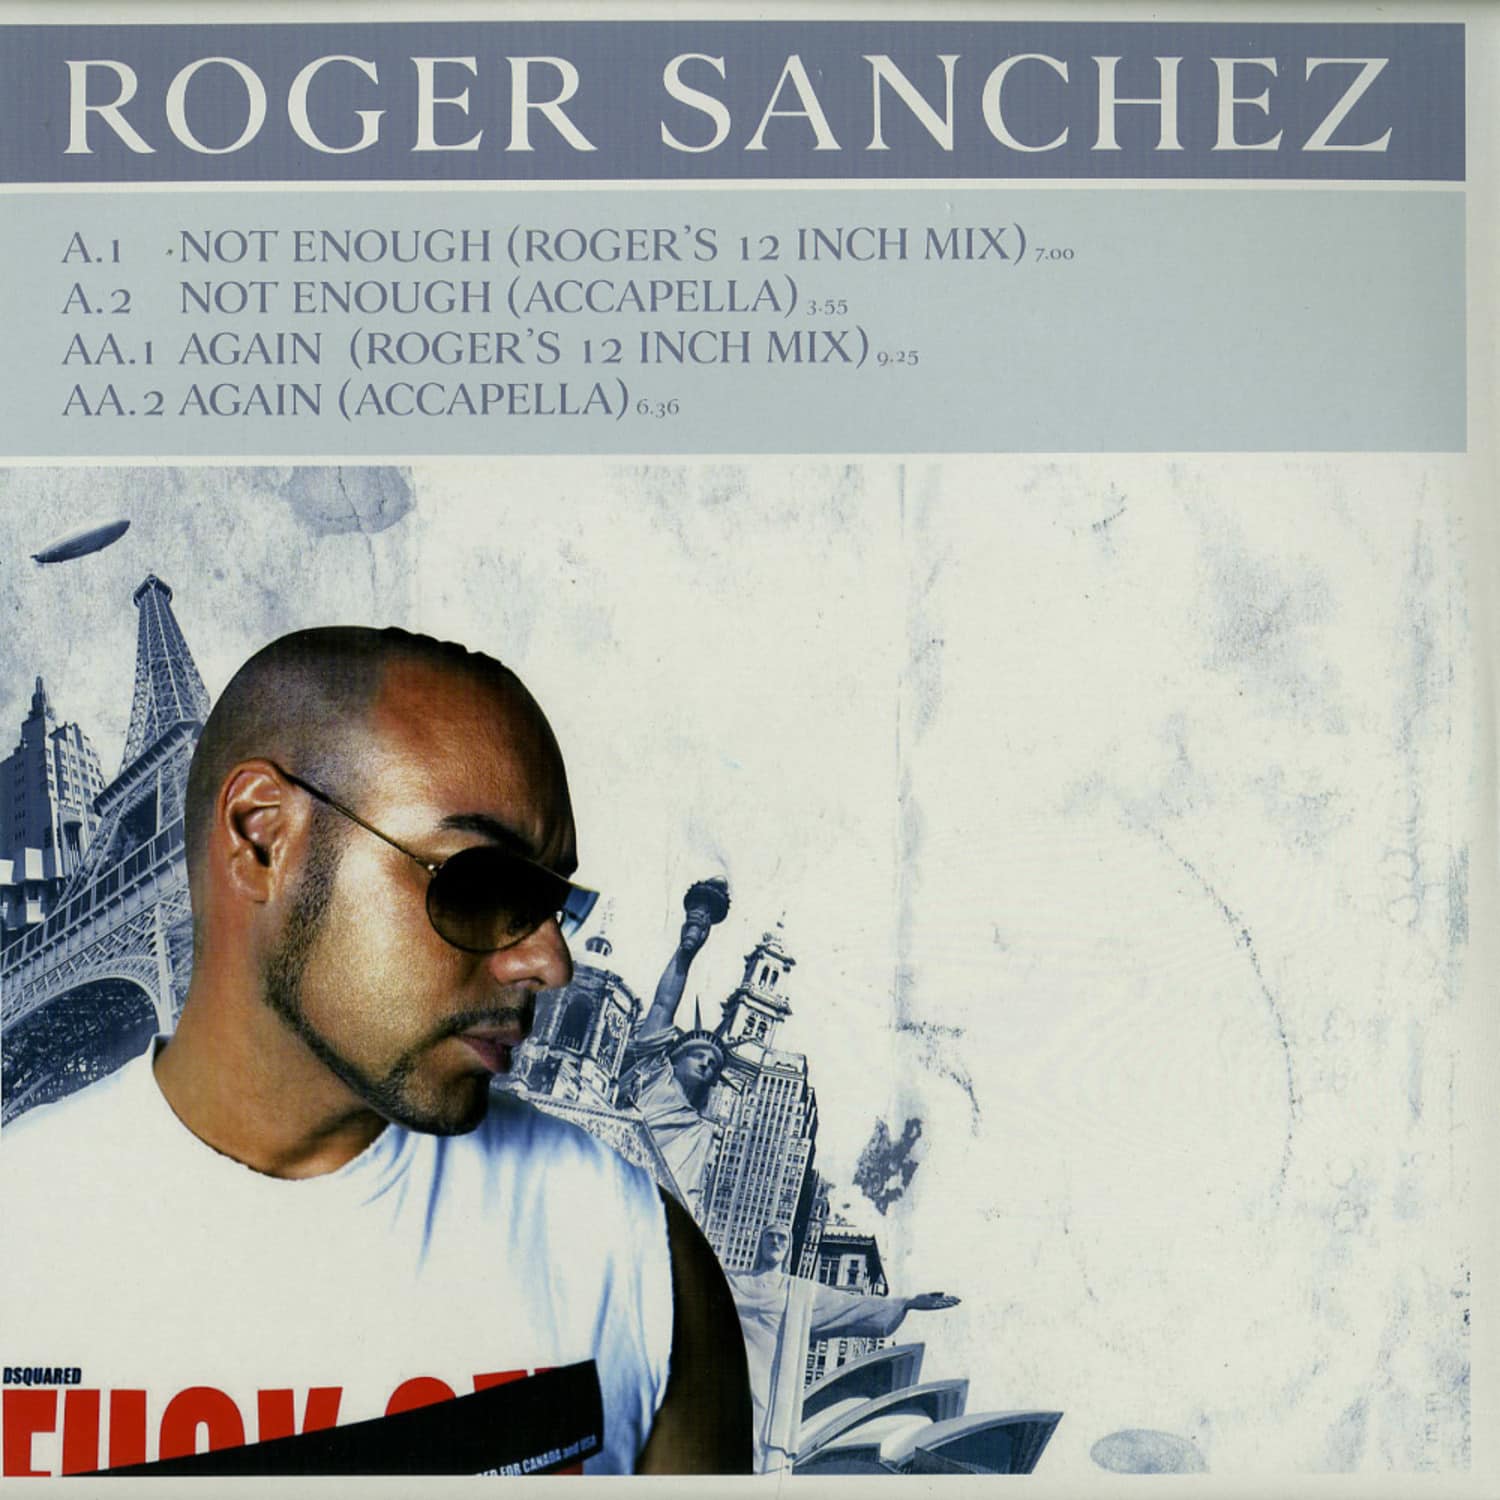 Roger Sanchez - Again ( mix)